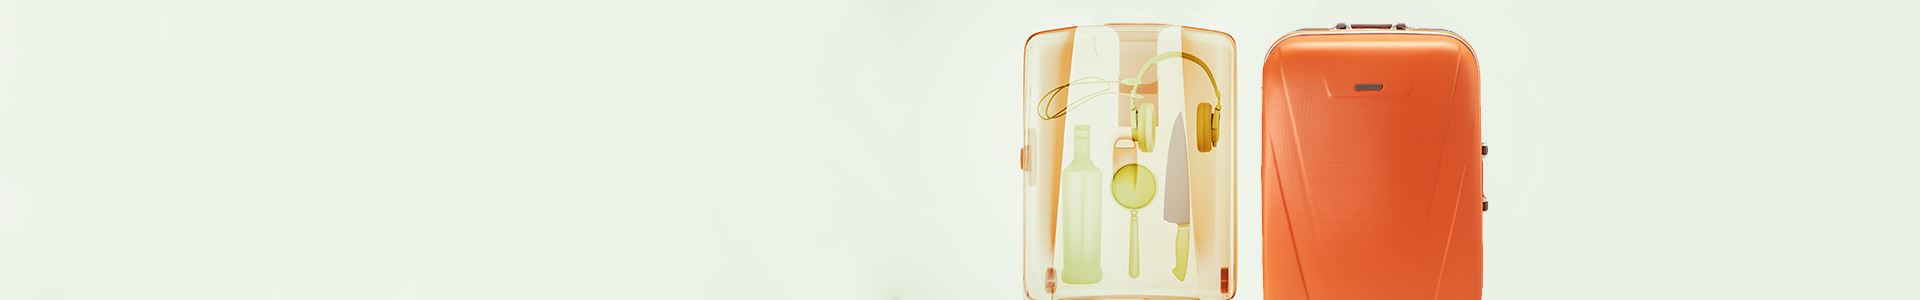 Фотография оранжевой тележки с рентгеновским снимком ее внутренней части с левой стороны. Рентген показывает несколько предметов: нож, наушники, бутылку и увеличительное стекло.